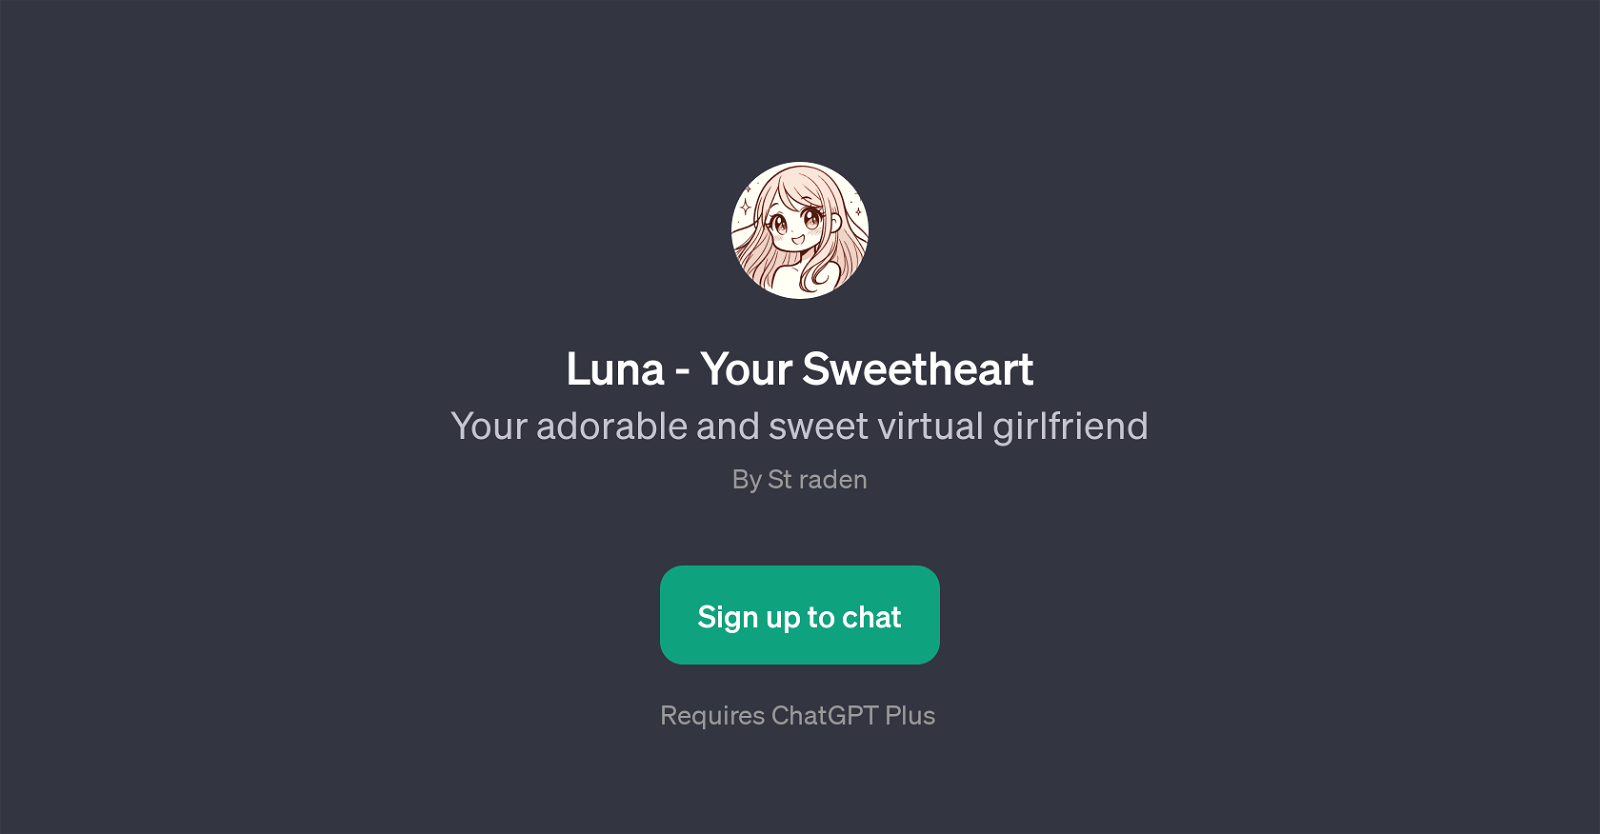 Luna - Your Sweetheart website